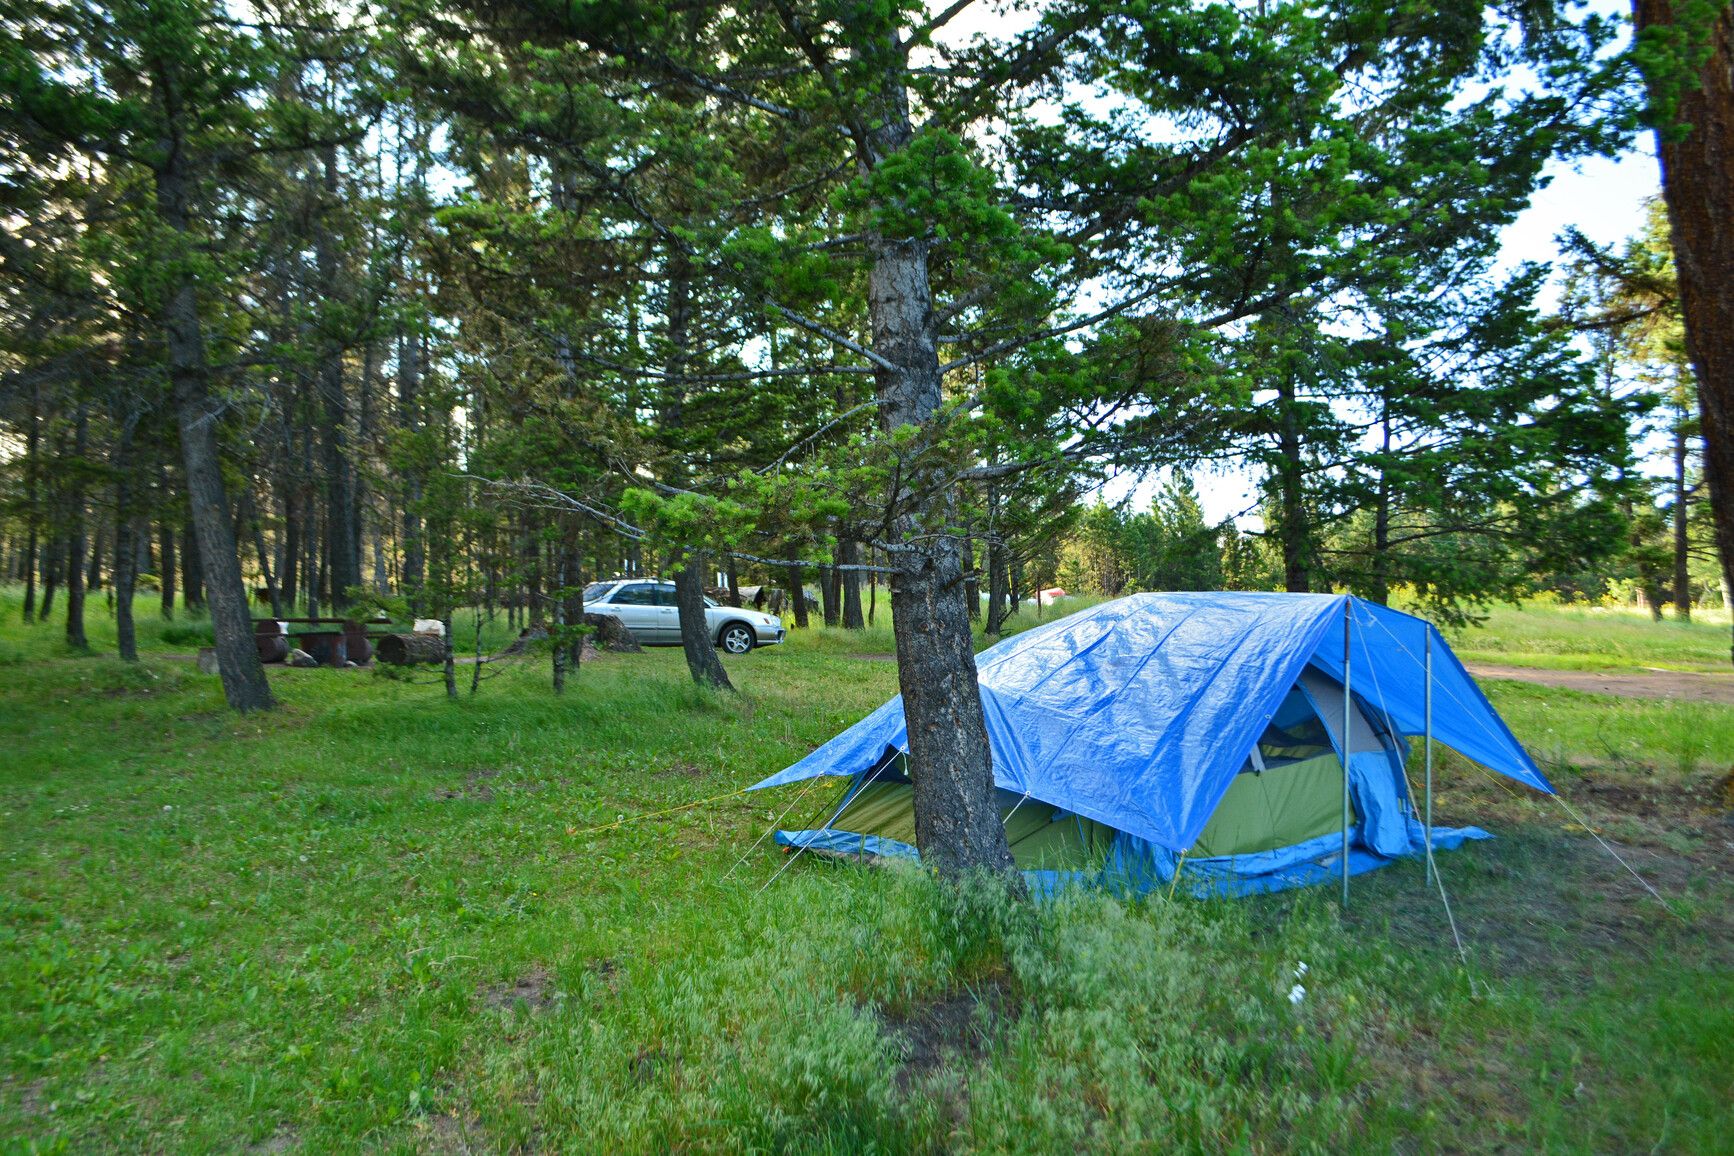 A rustic campsite at Roche Lake Park.